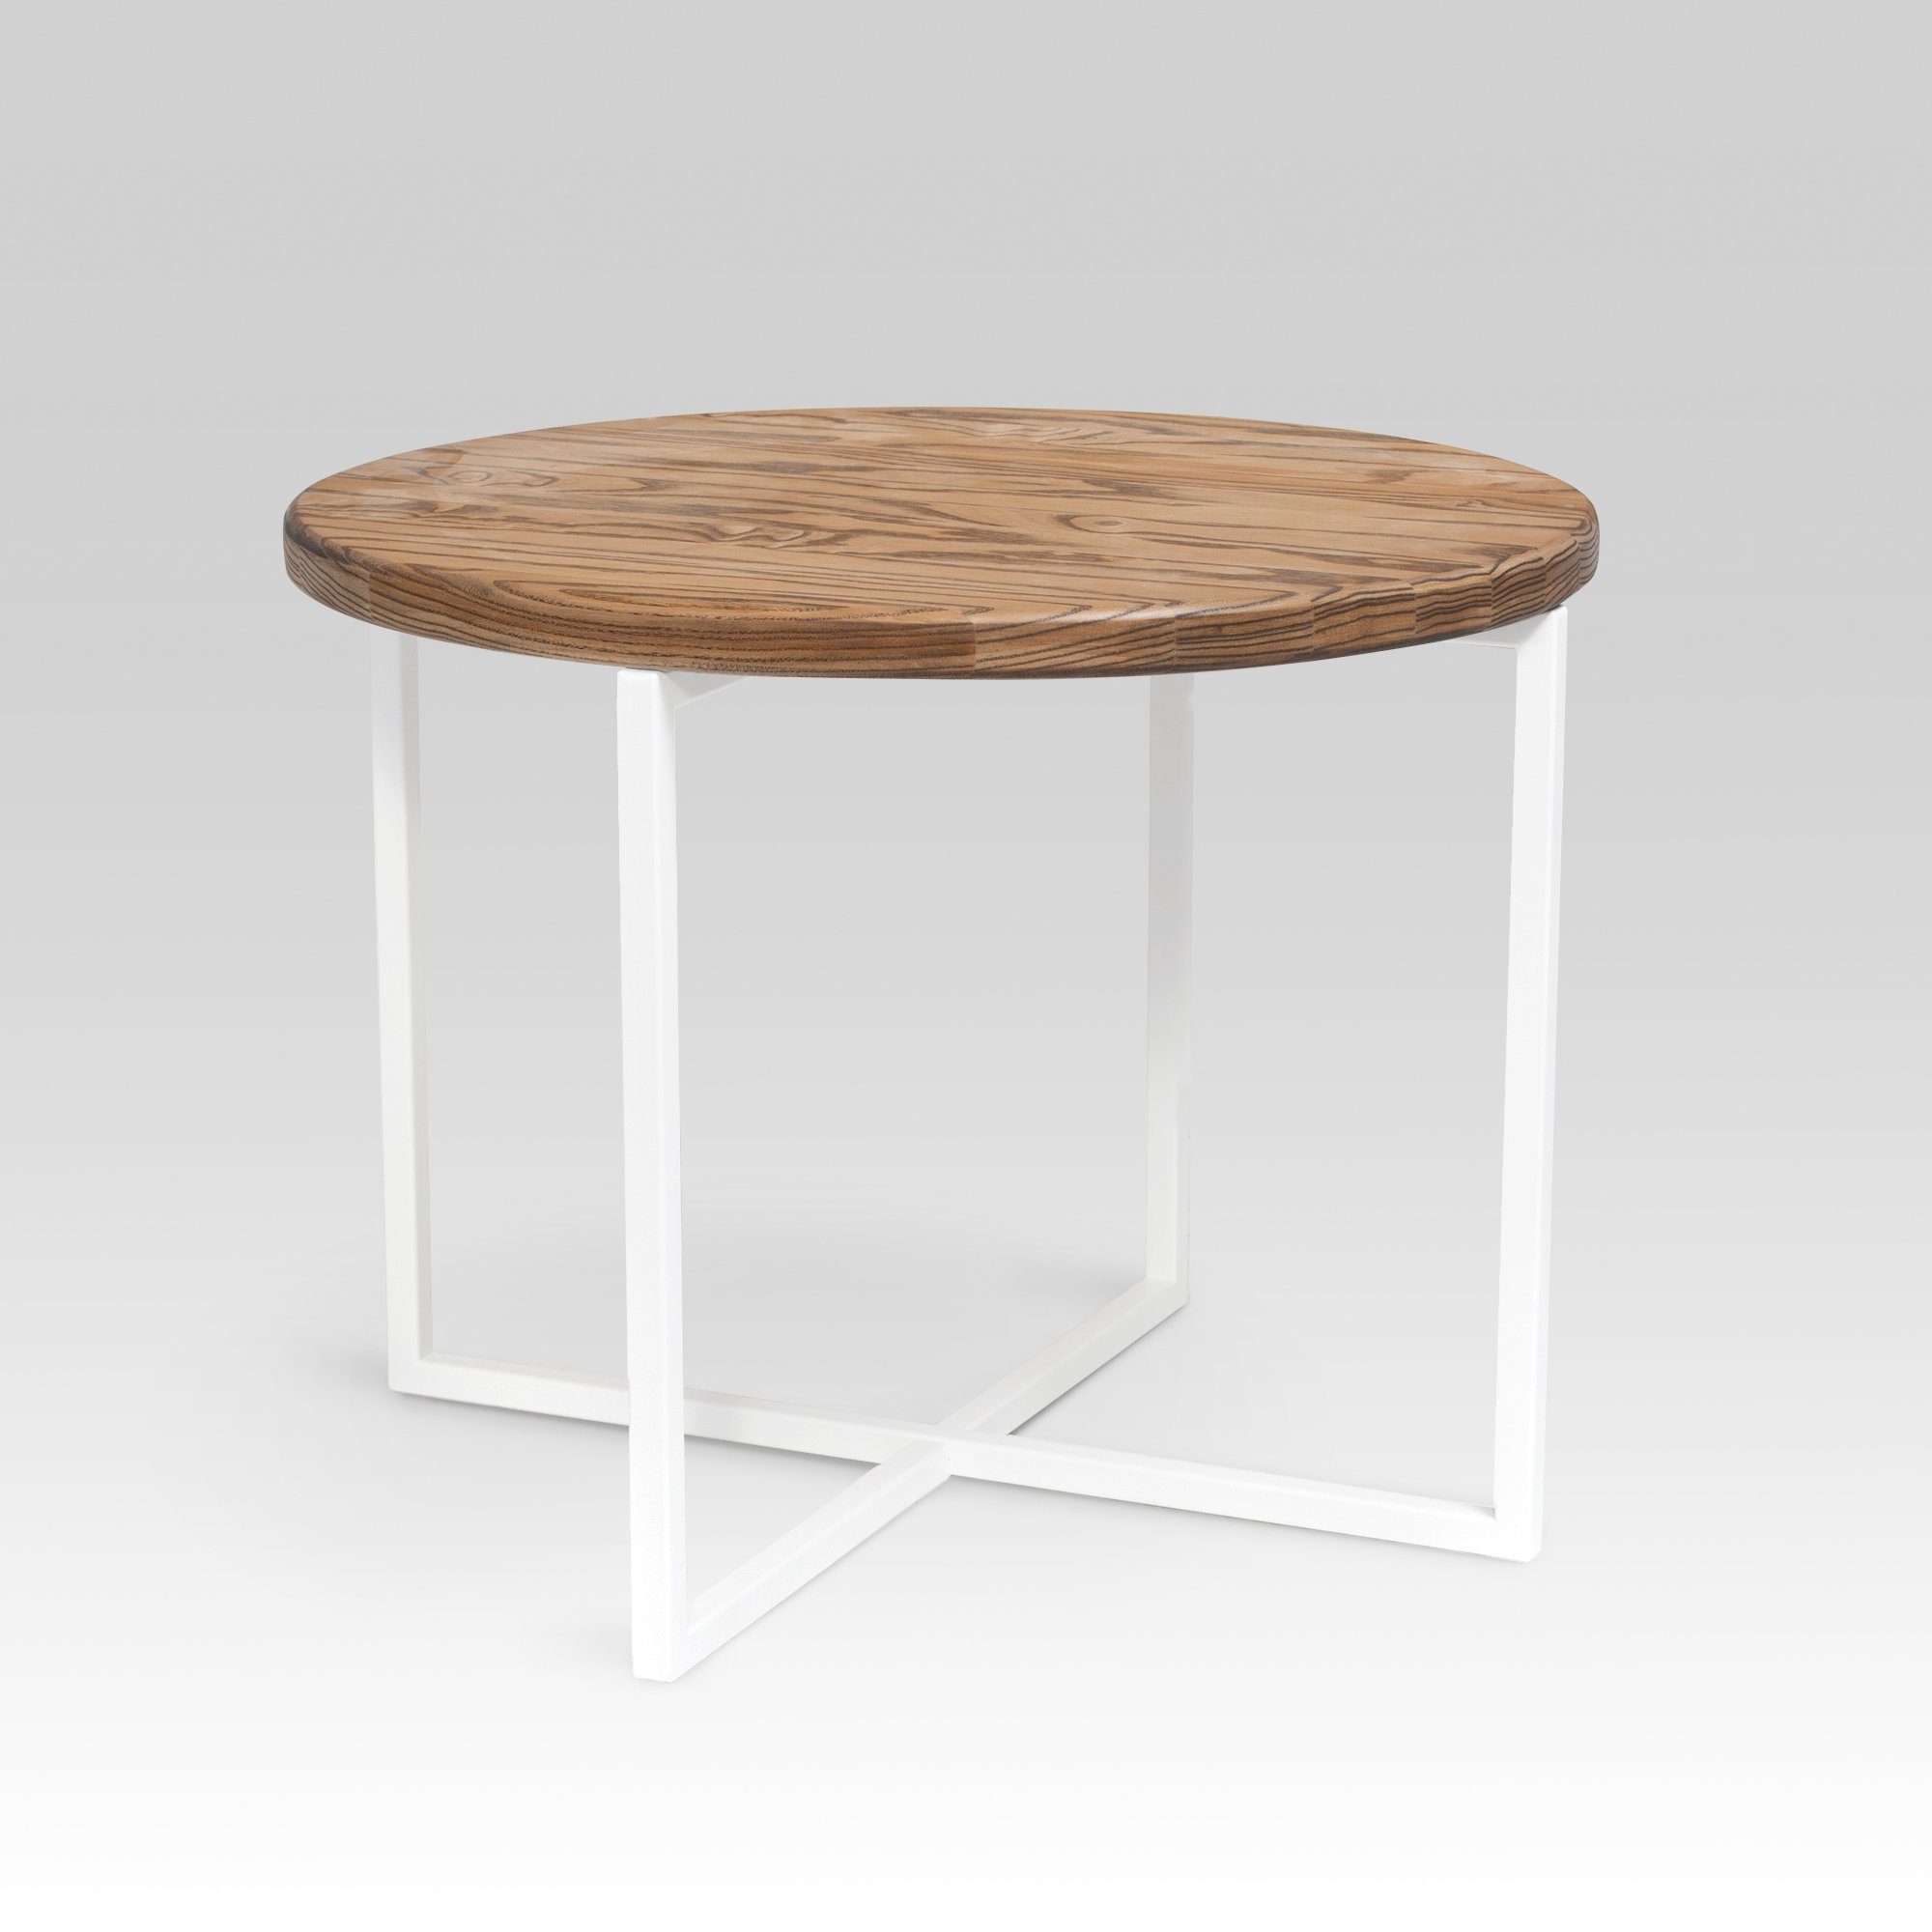 2 - Metallfüße Stück Rikmani Tischbeine Esstisch, Weiß für Couch SR Tischgestell Schreibtisch, Metall 66